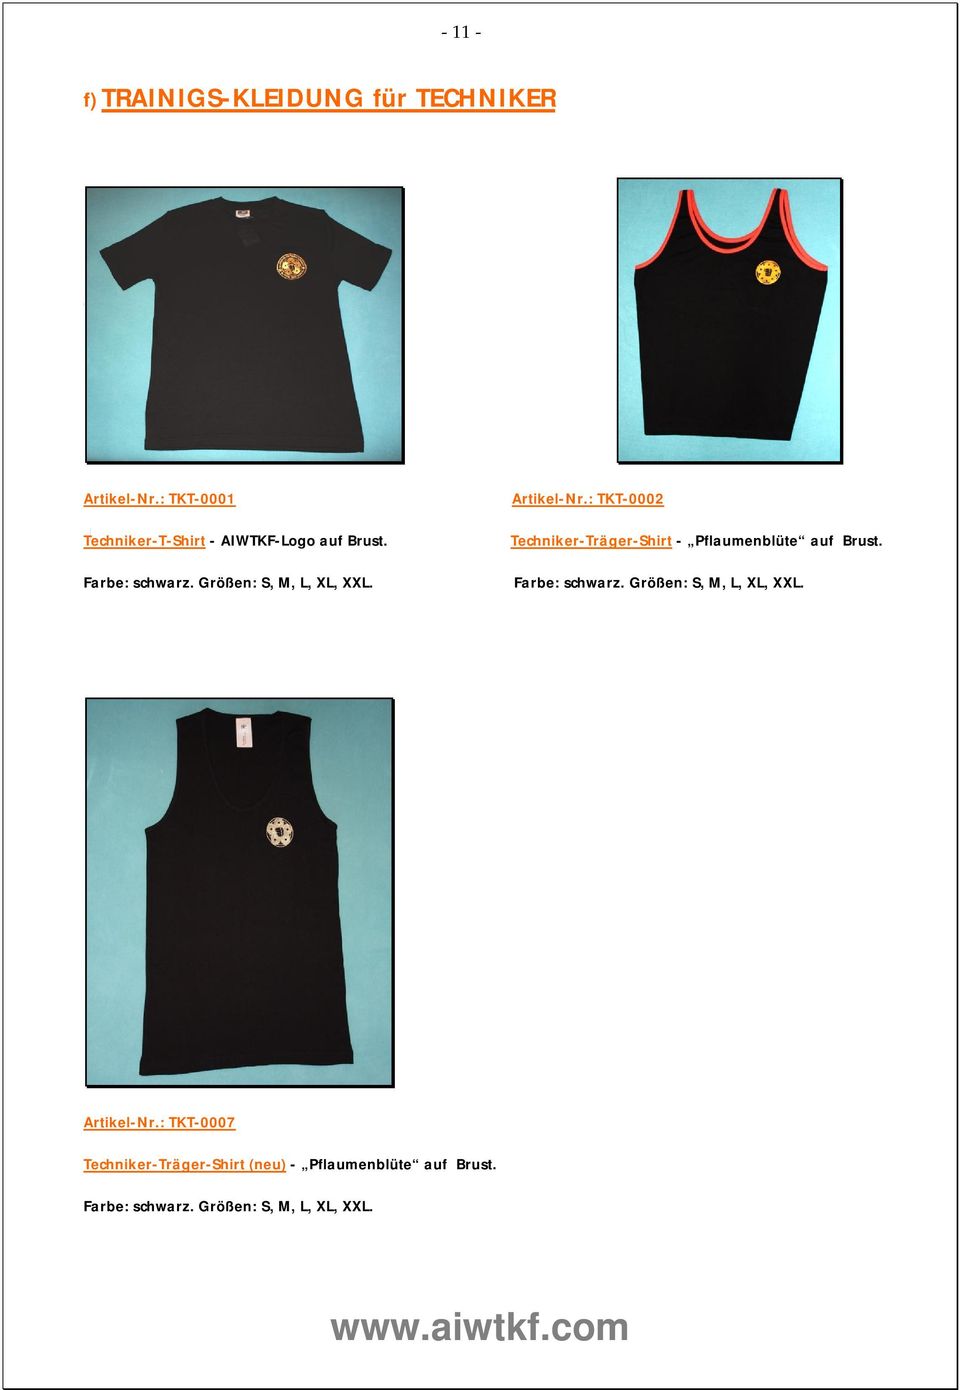 Techniker-Träger-Shirt - Pflaumenblüte auf Brust. Farbe: schwarz. Größen: S, M, L, XL, XXL.